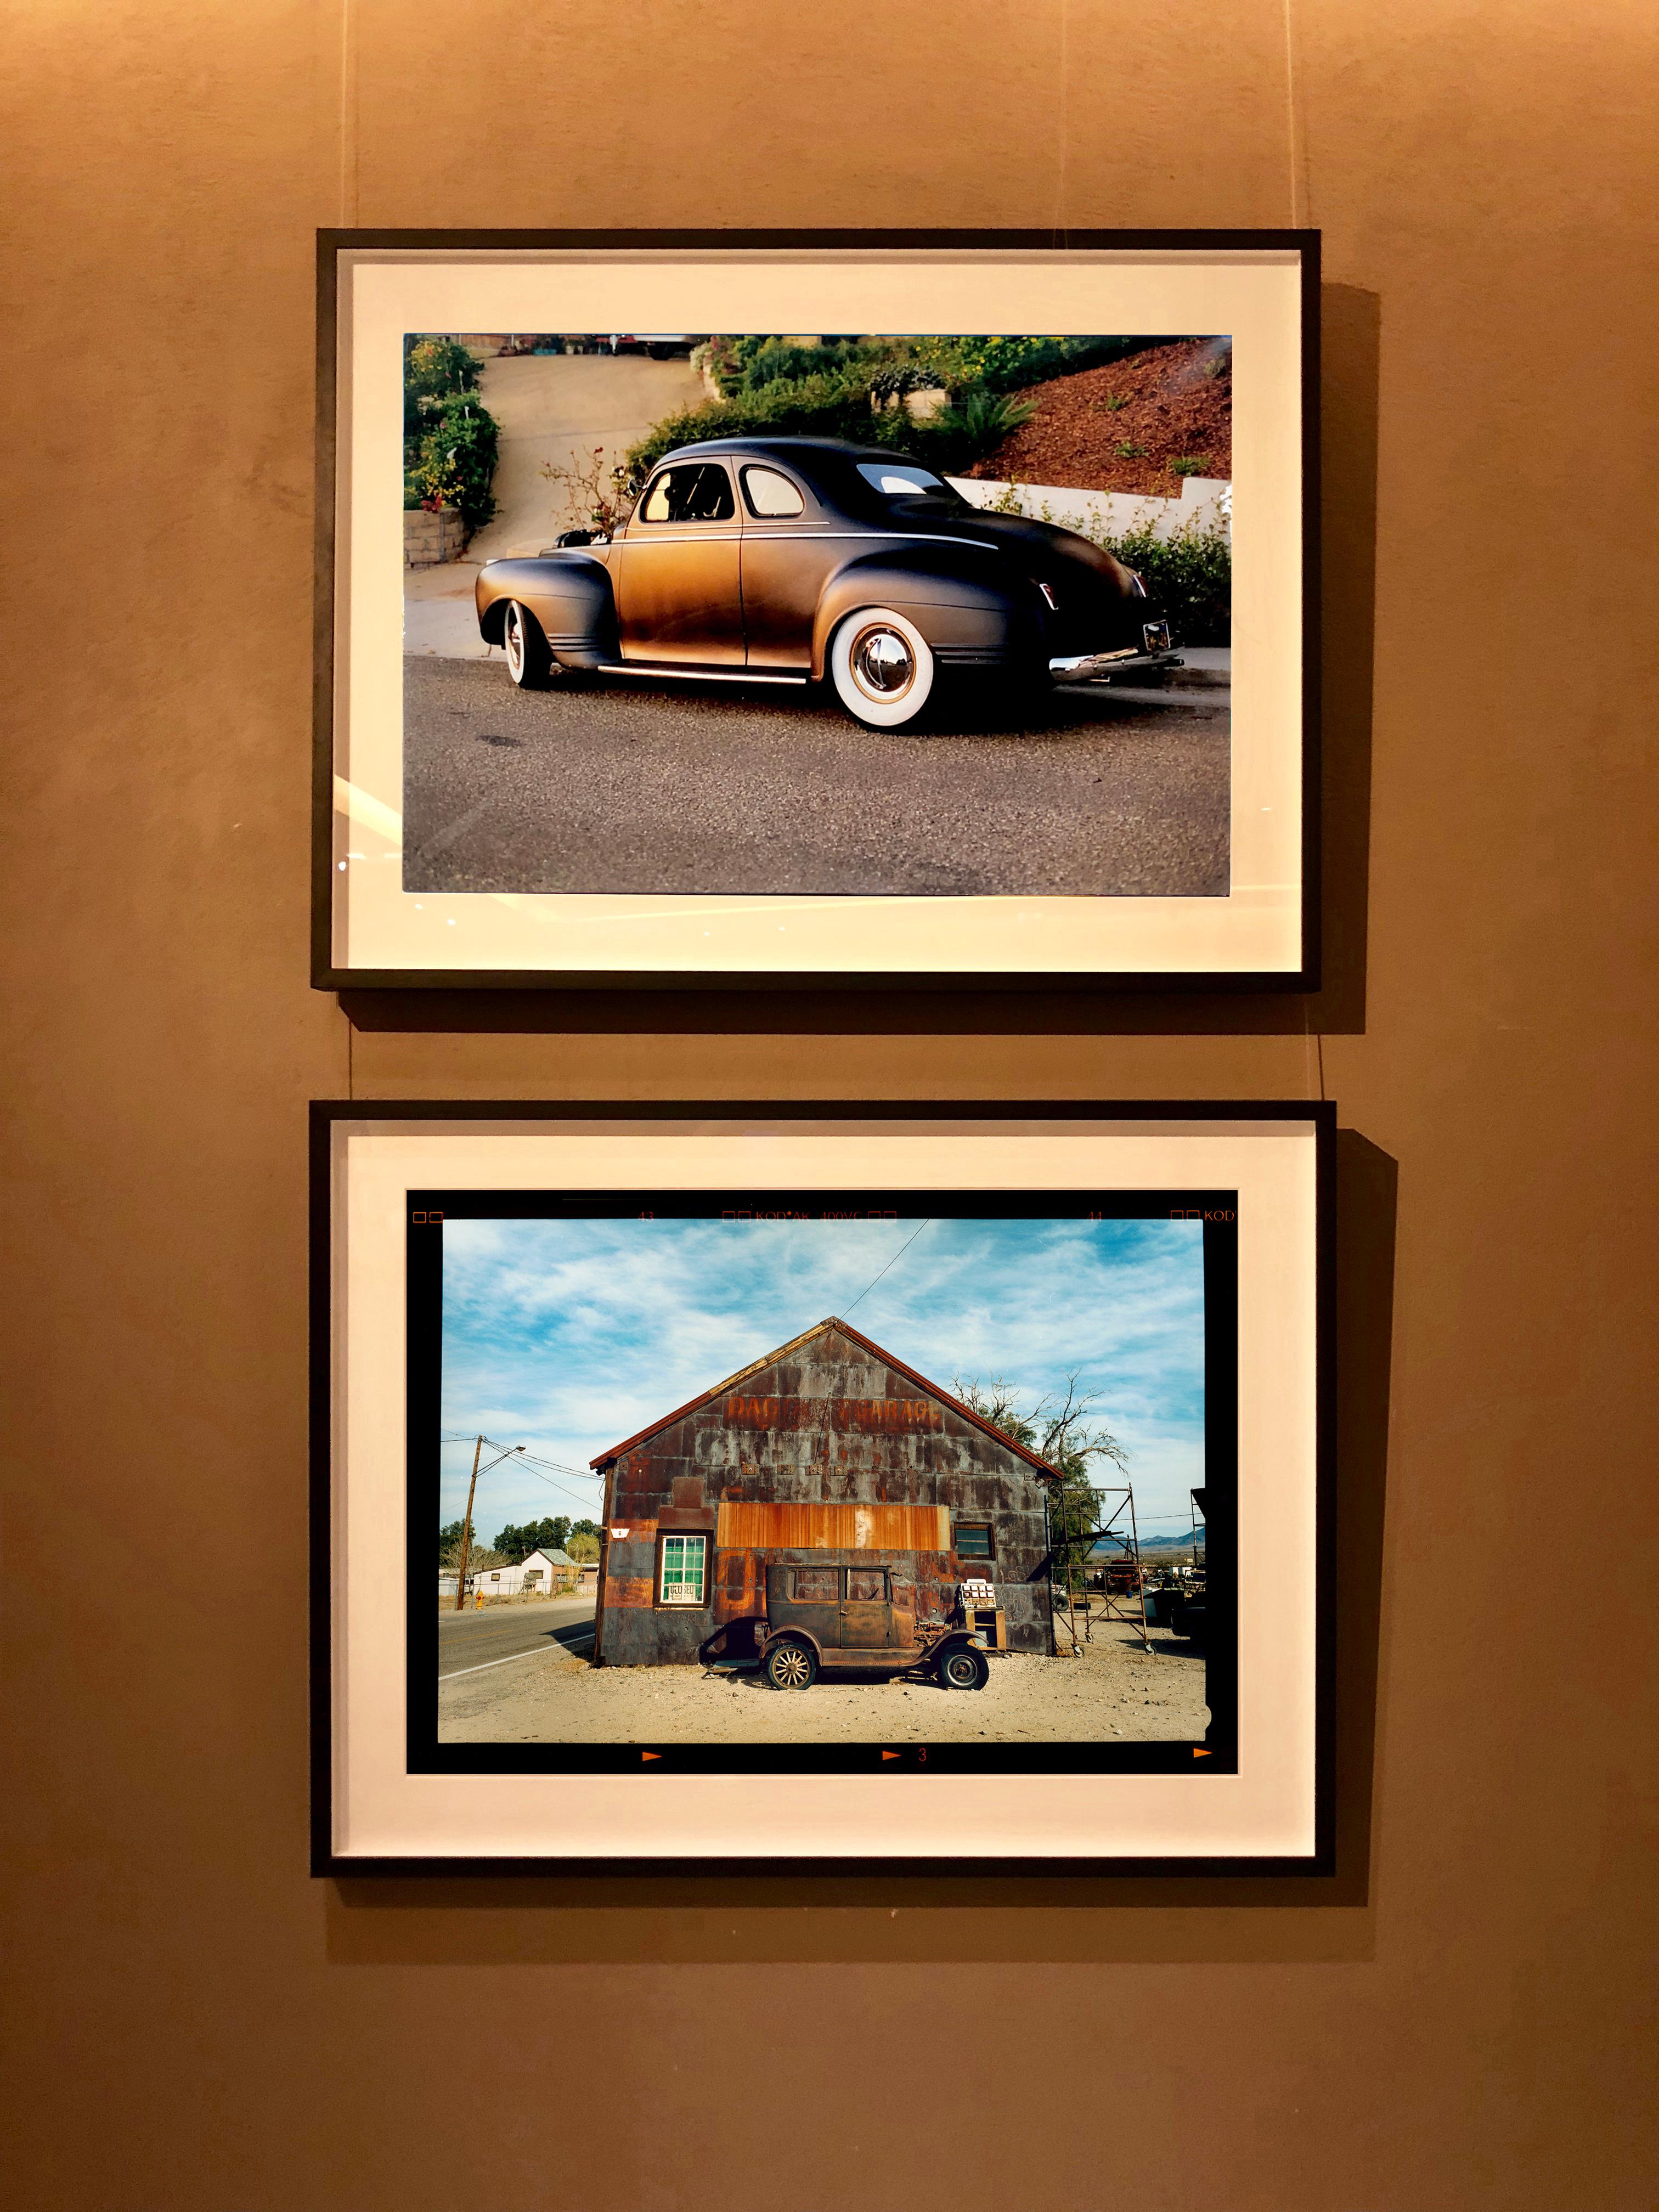 Modell T und Garage, Daggett, Kalifornien – Farbfotografie (Grau), Landscape Photograph, von Richard Heeps